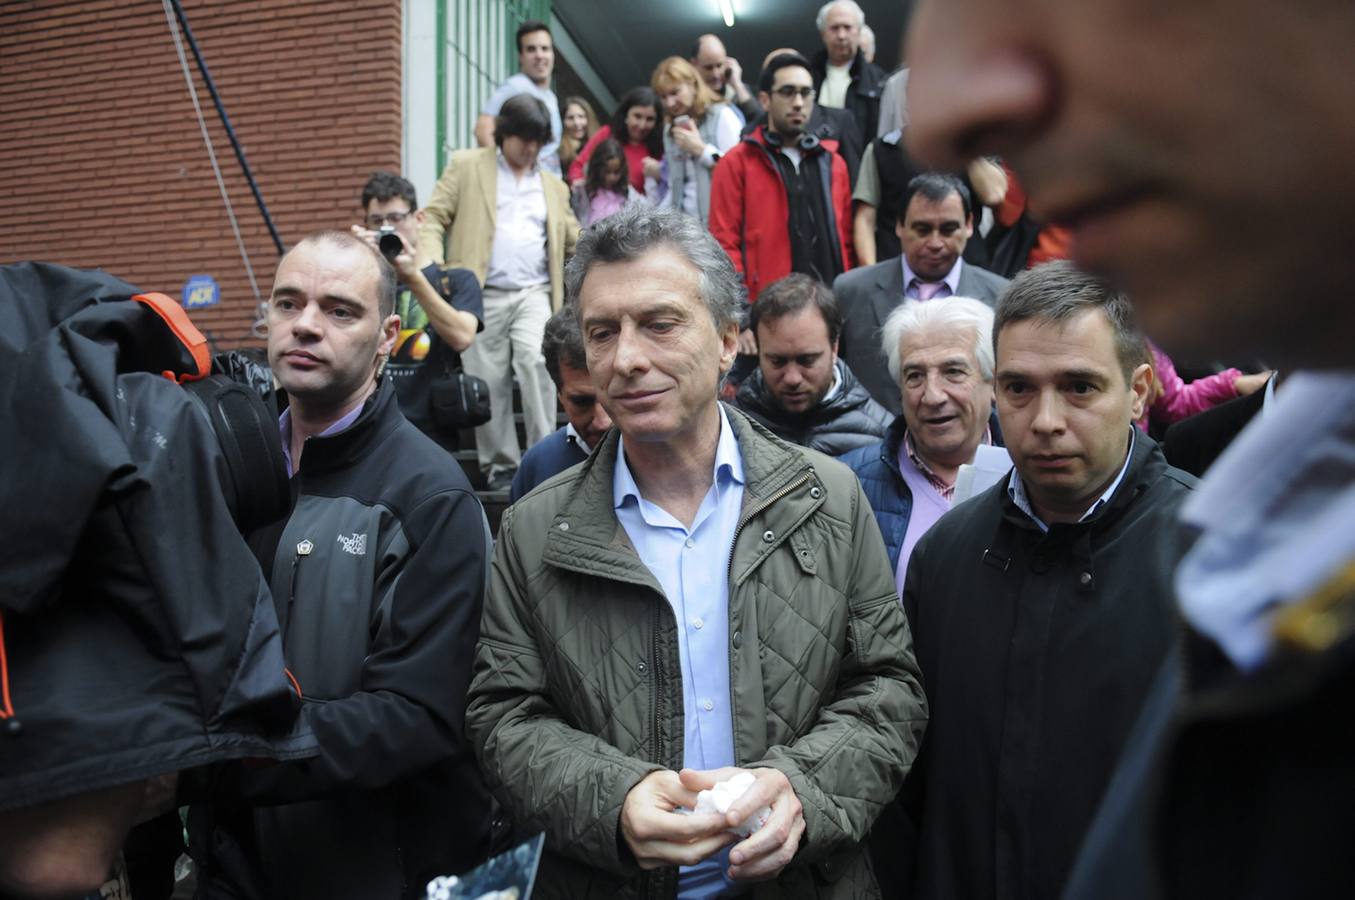 El alcalde de Buenos Aires y candidato a la presidencia, Mauricio Macri, llega hoy, domingo 9 de agosto de 2015, a su centro electoral para votar en los comicios argentinos